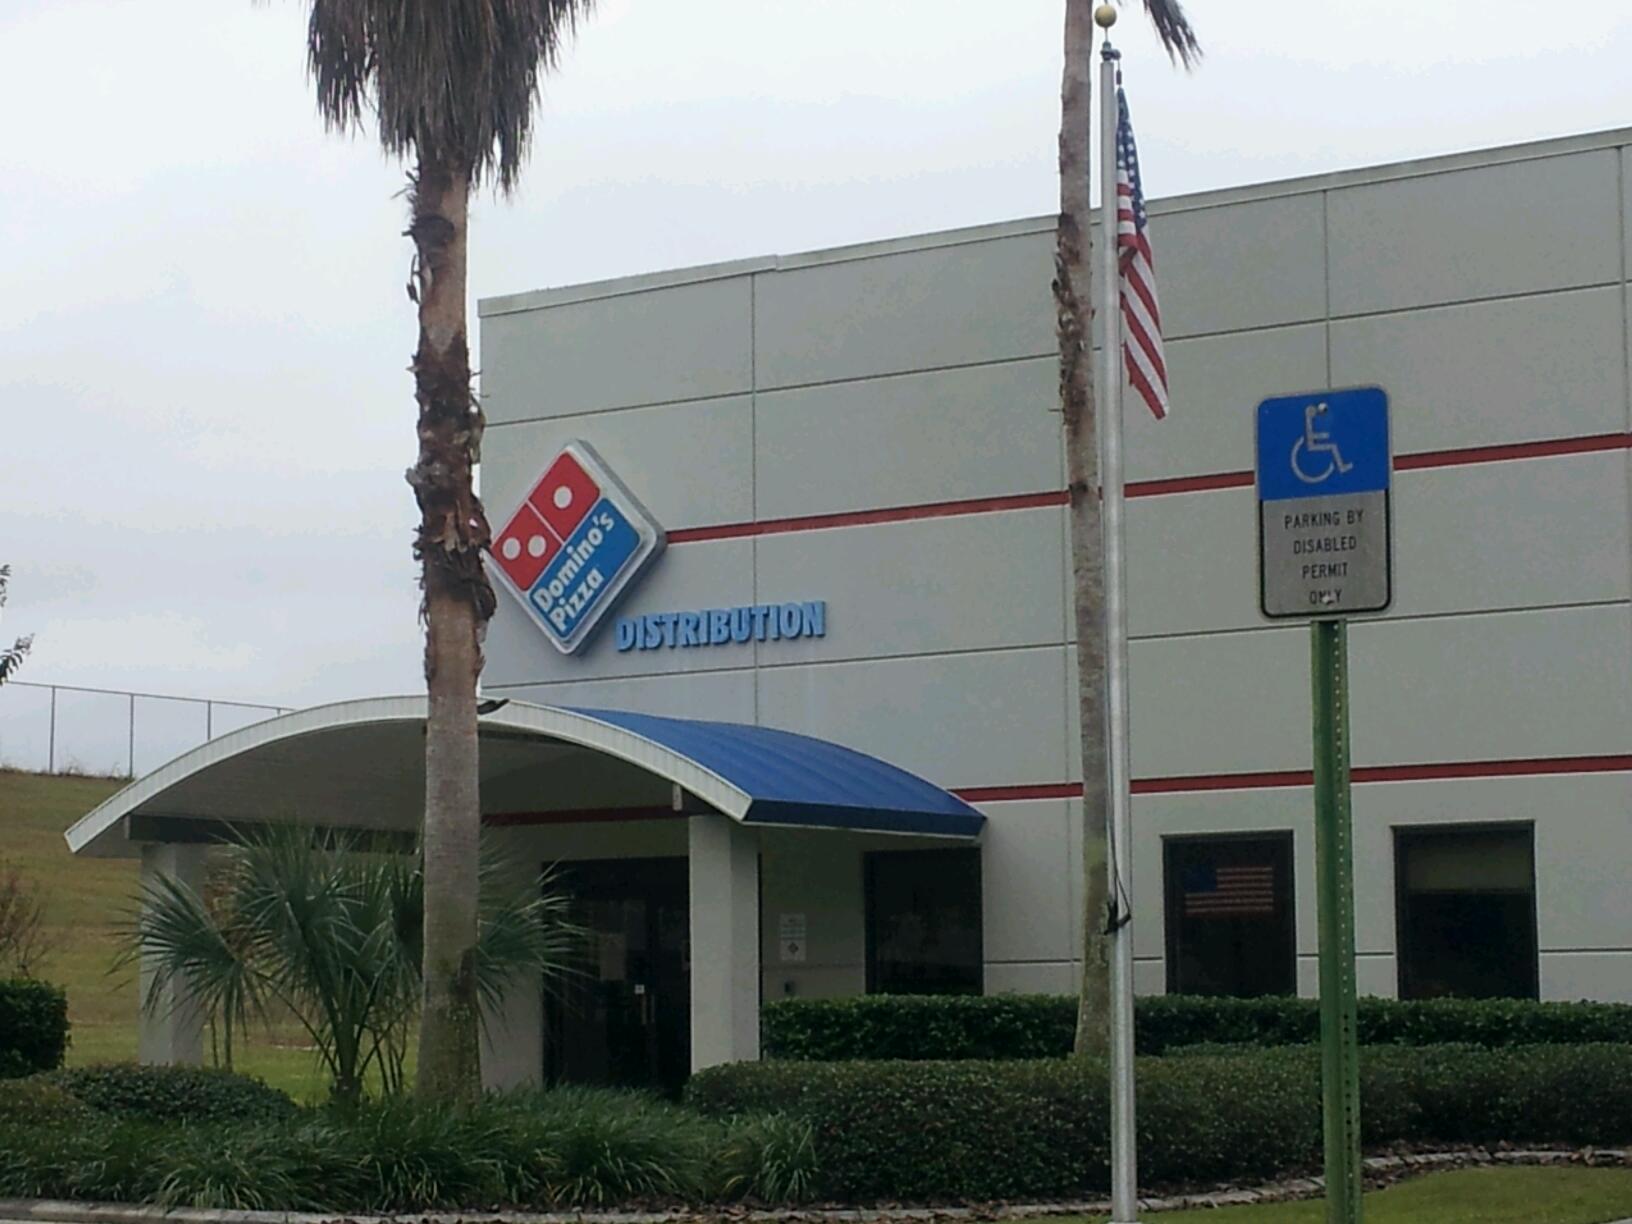 Domino's Pizza Distribution Center